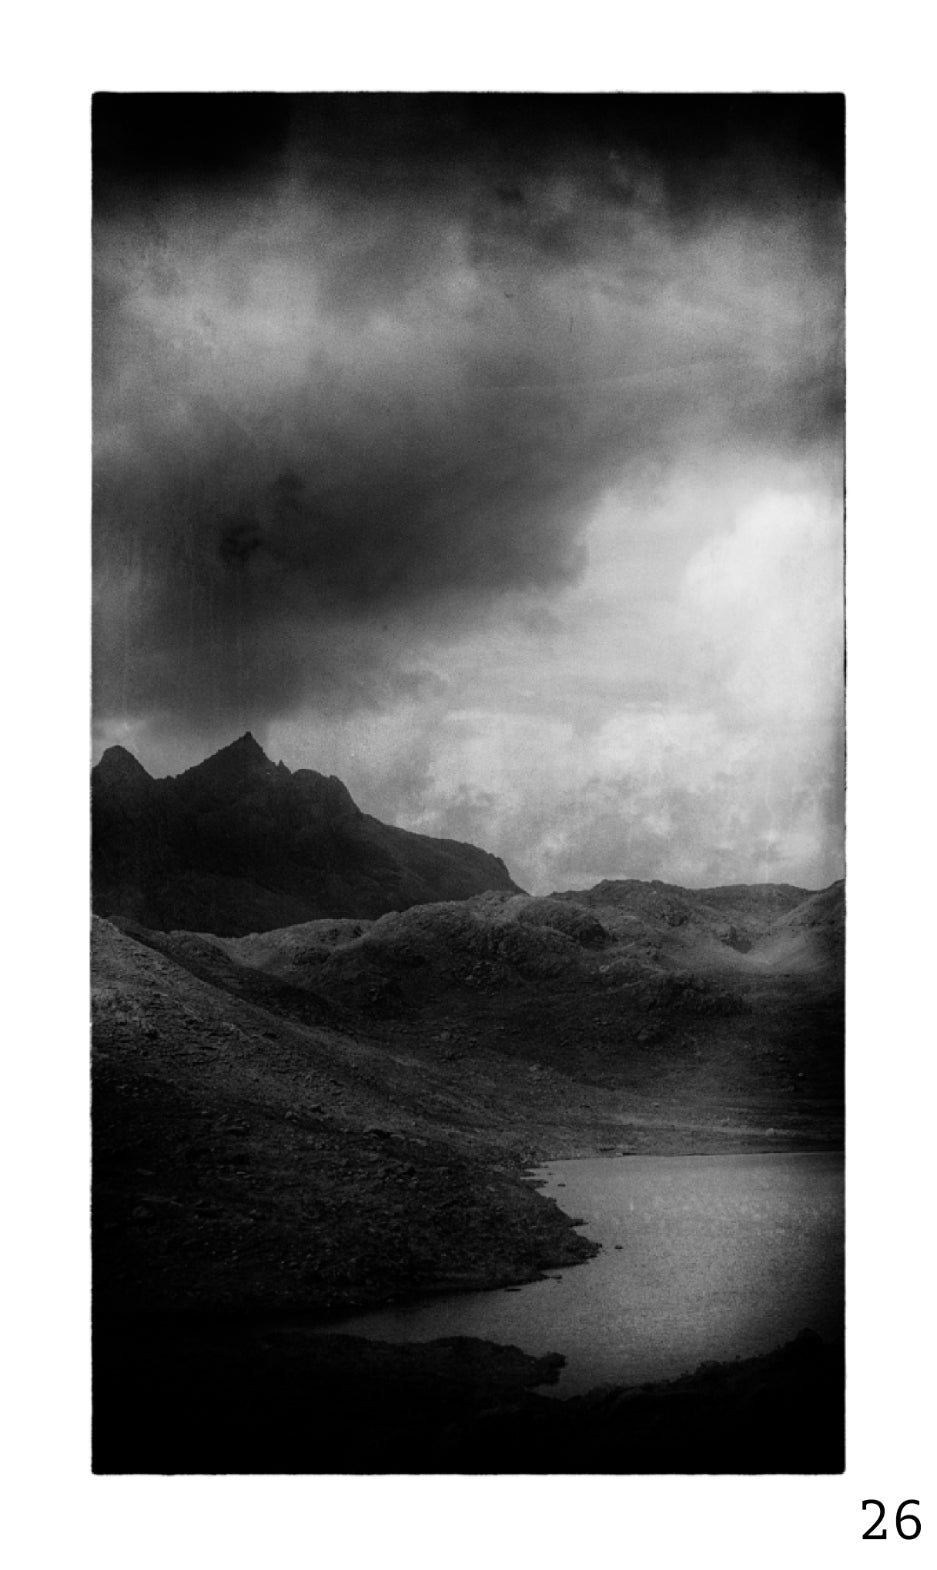 Guy Dickinson A Shadow Passes A2 print (SKYE_26) at Bard Scotland.